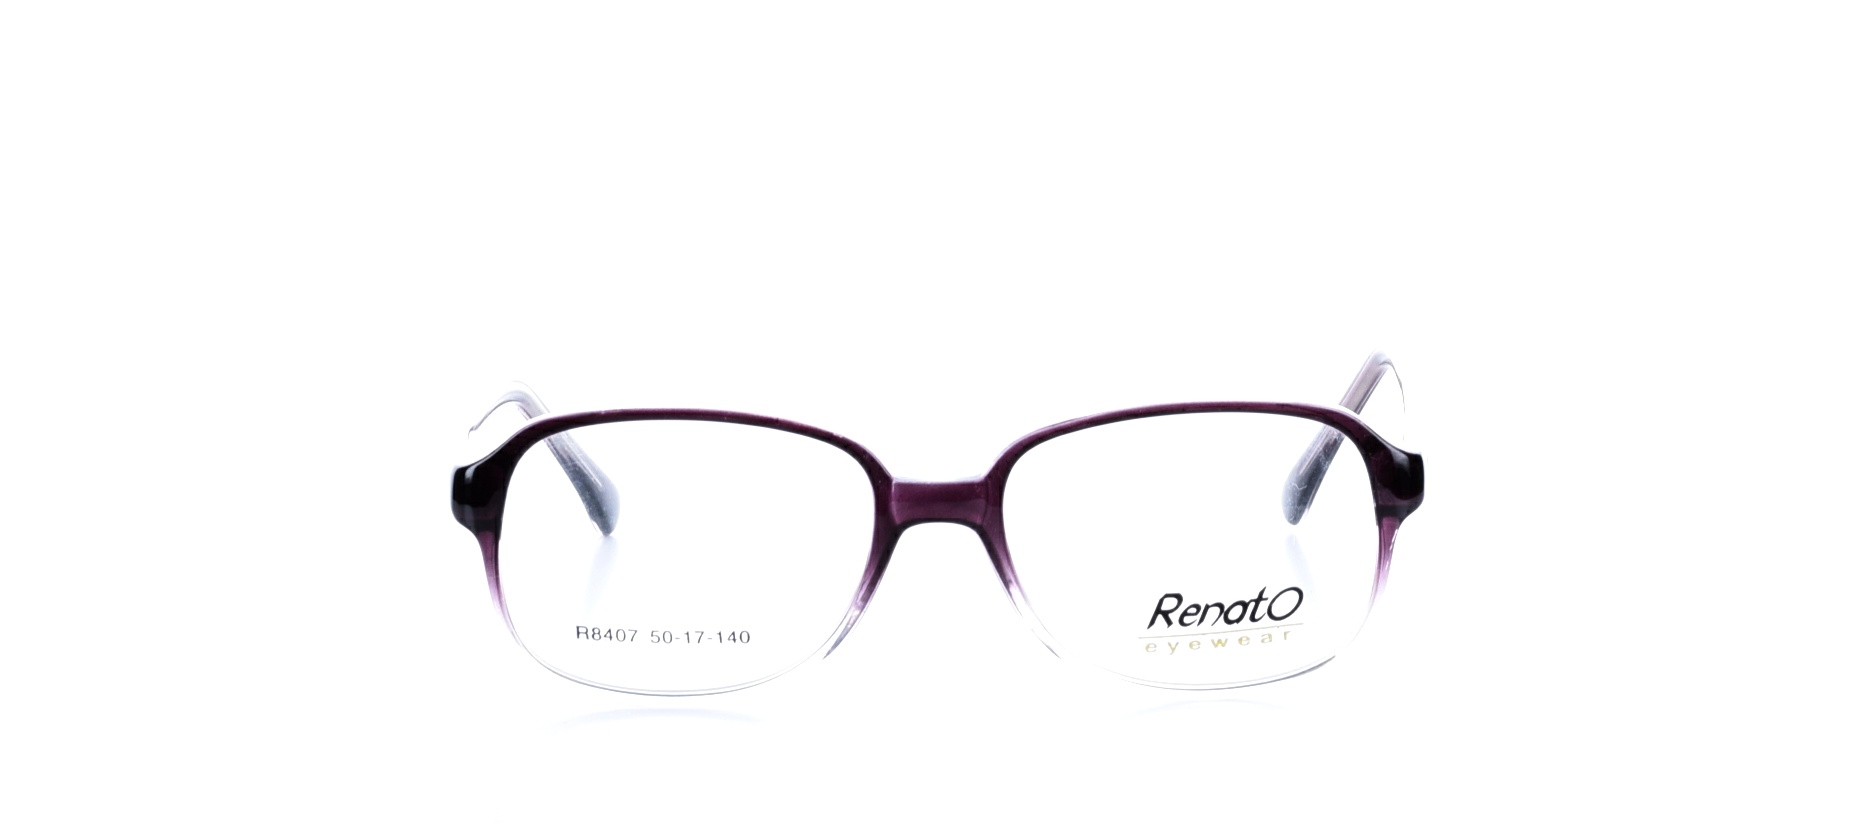 Rama ochelari vedere Renato